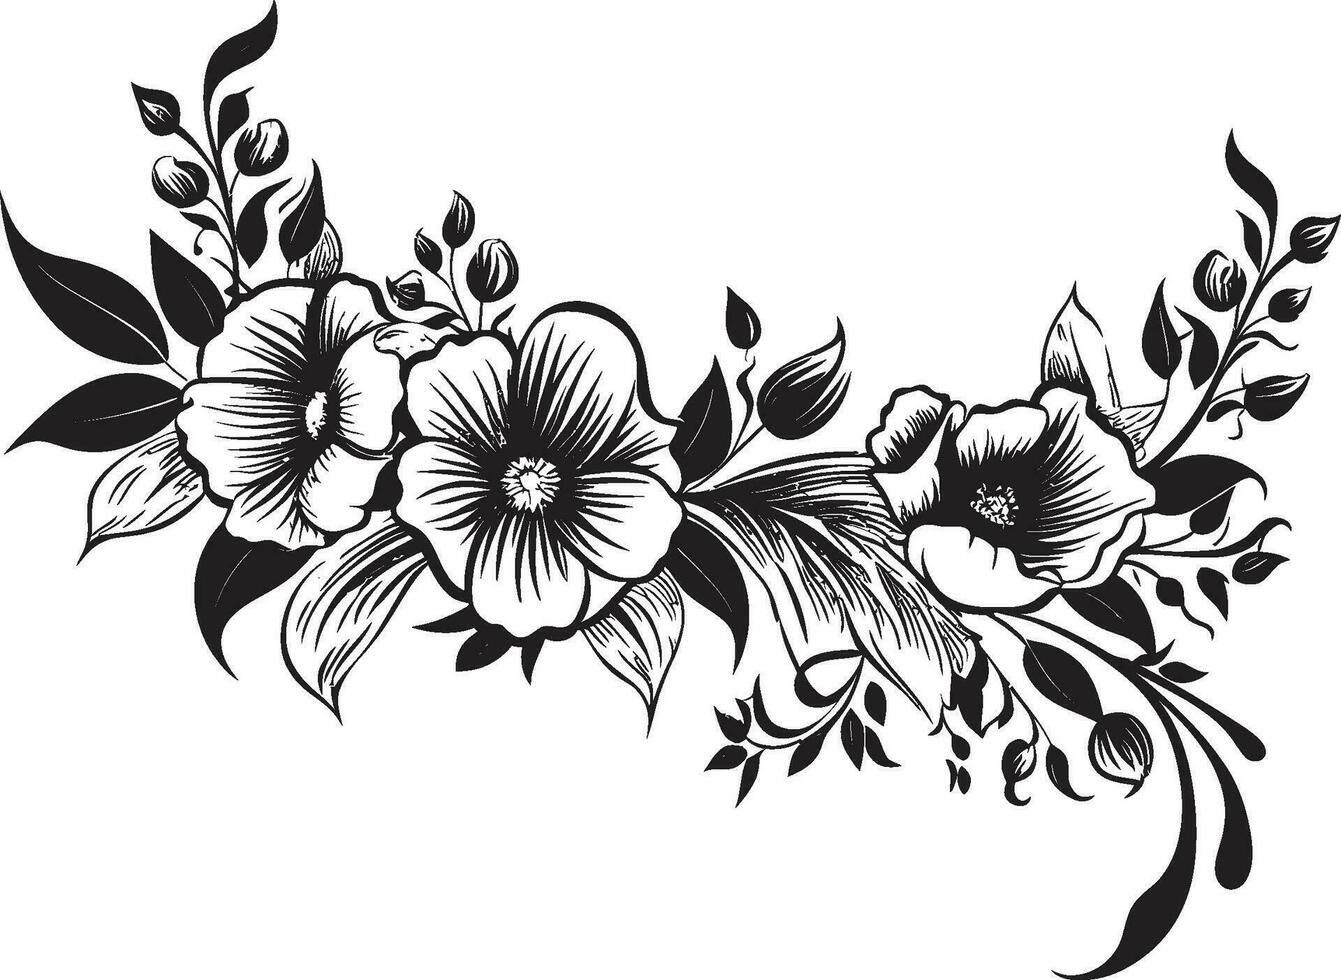 grafite petalo incisioni mano disegnato nero emblema design noir gardenia fantasticheria artistico floreale vettore icone